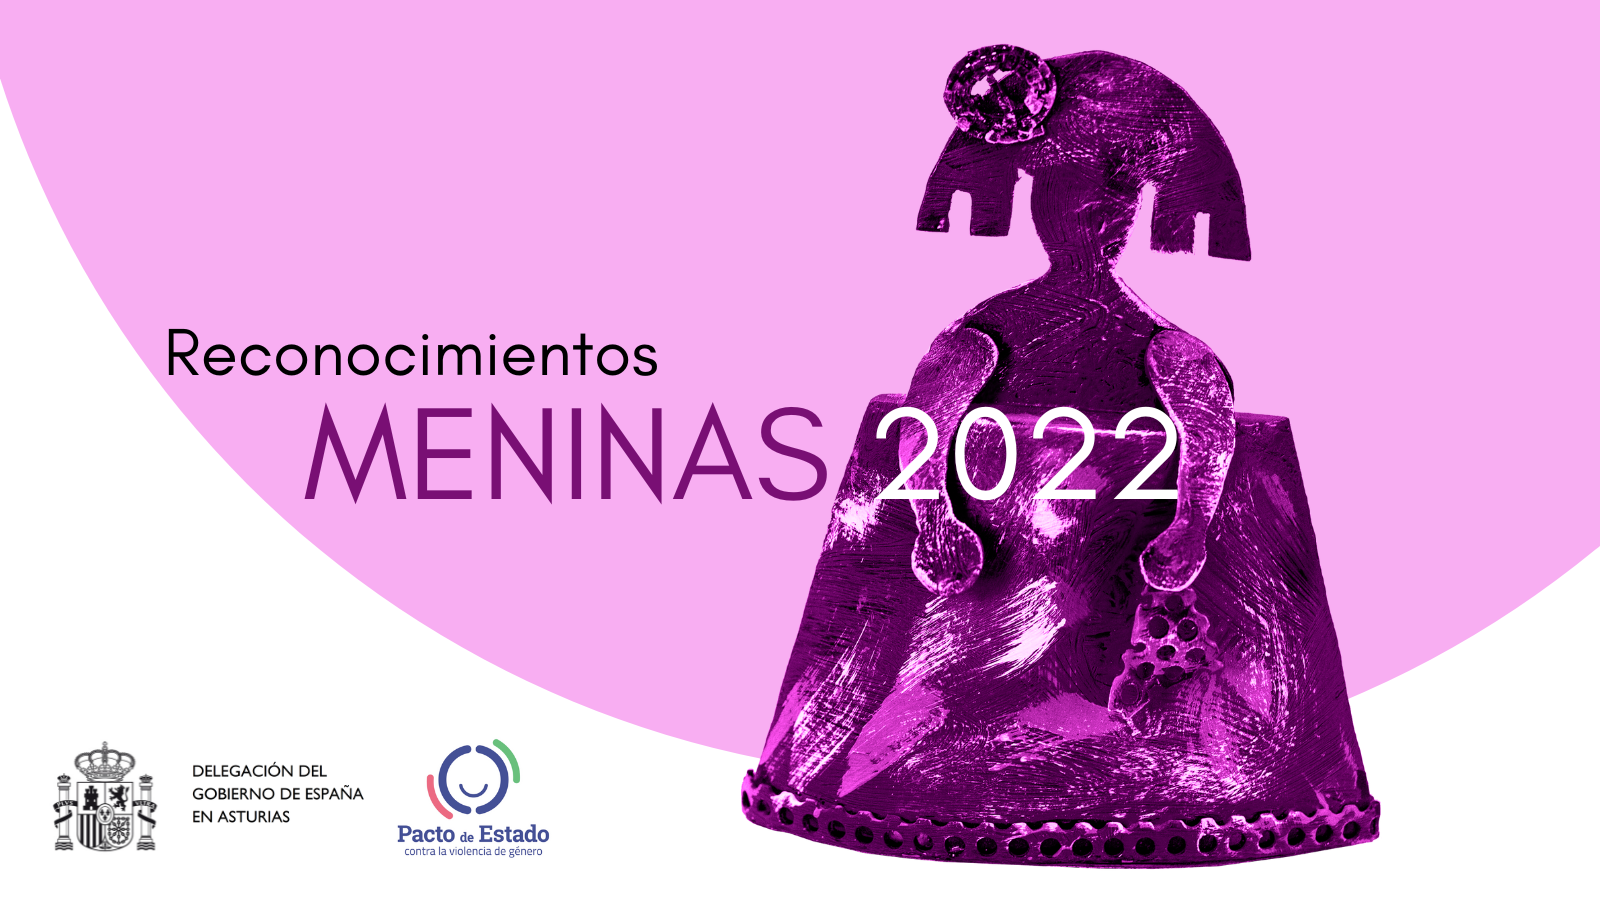 La Delegación del Gobierno concede el reconocimiento Menina 2022 a María Eugenia Prendes, fiscal delegada de Violencia de Género en Asturias